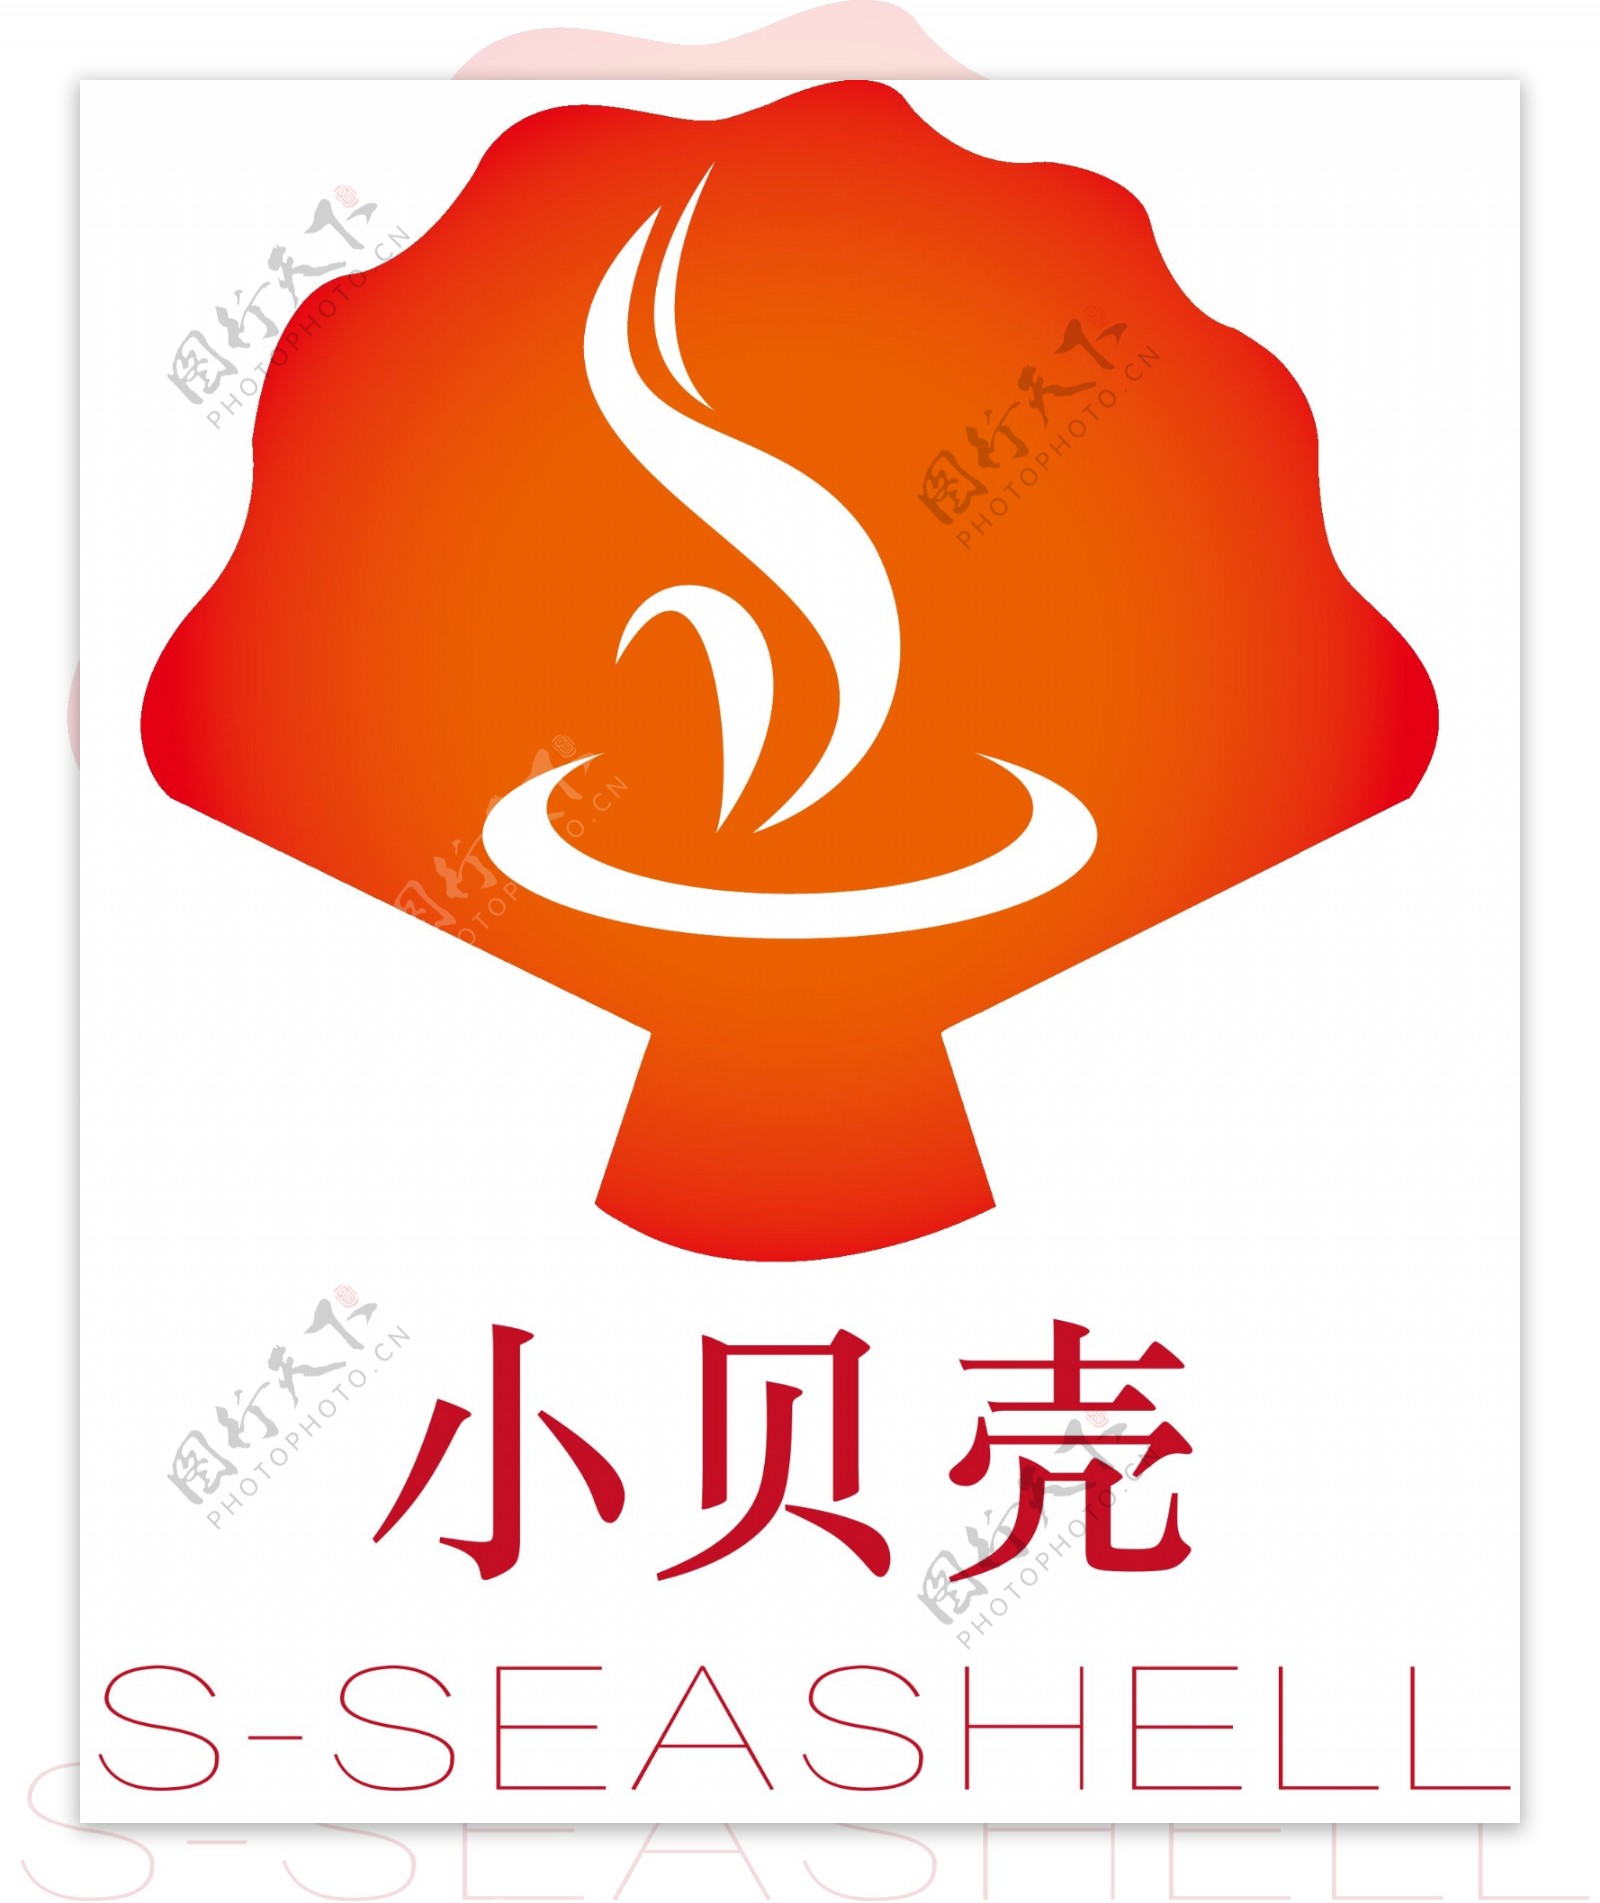 海鲜类饮食行业的logo设计2